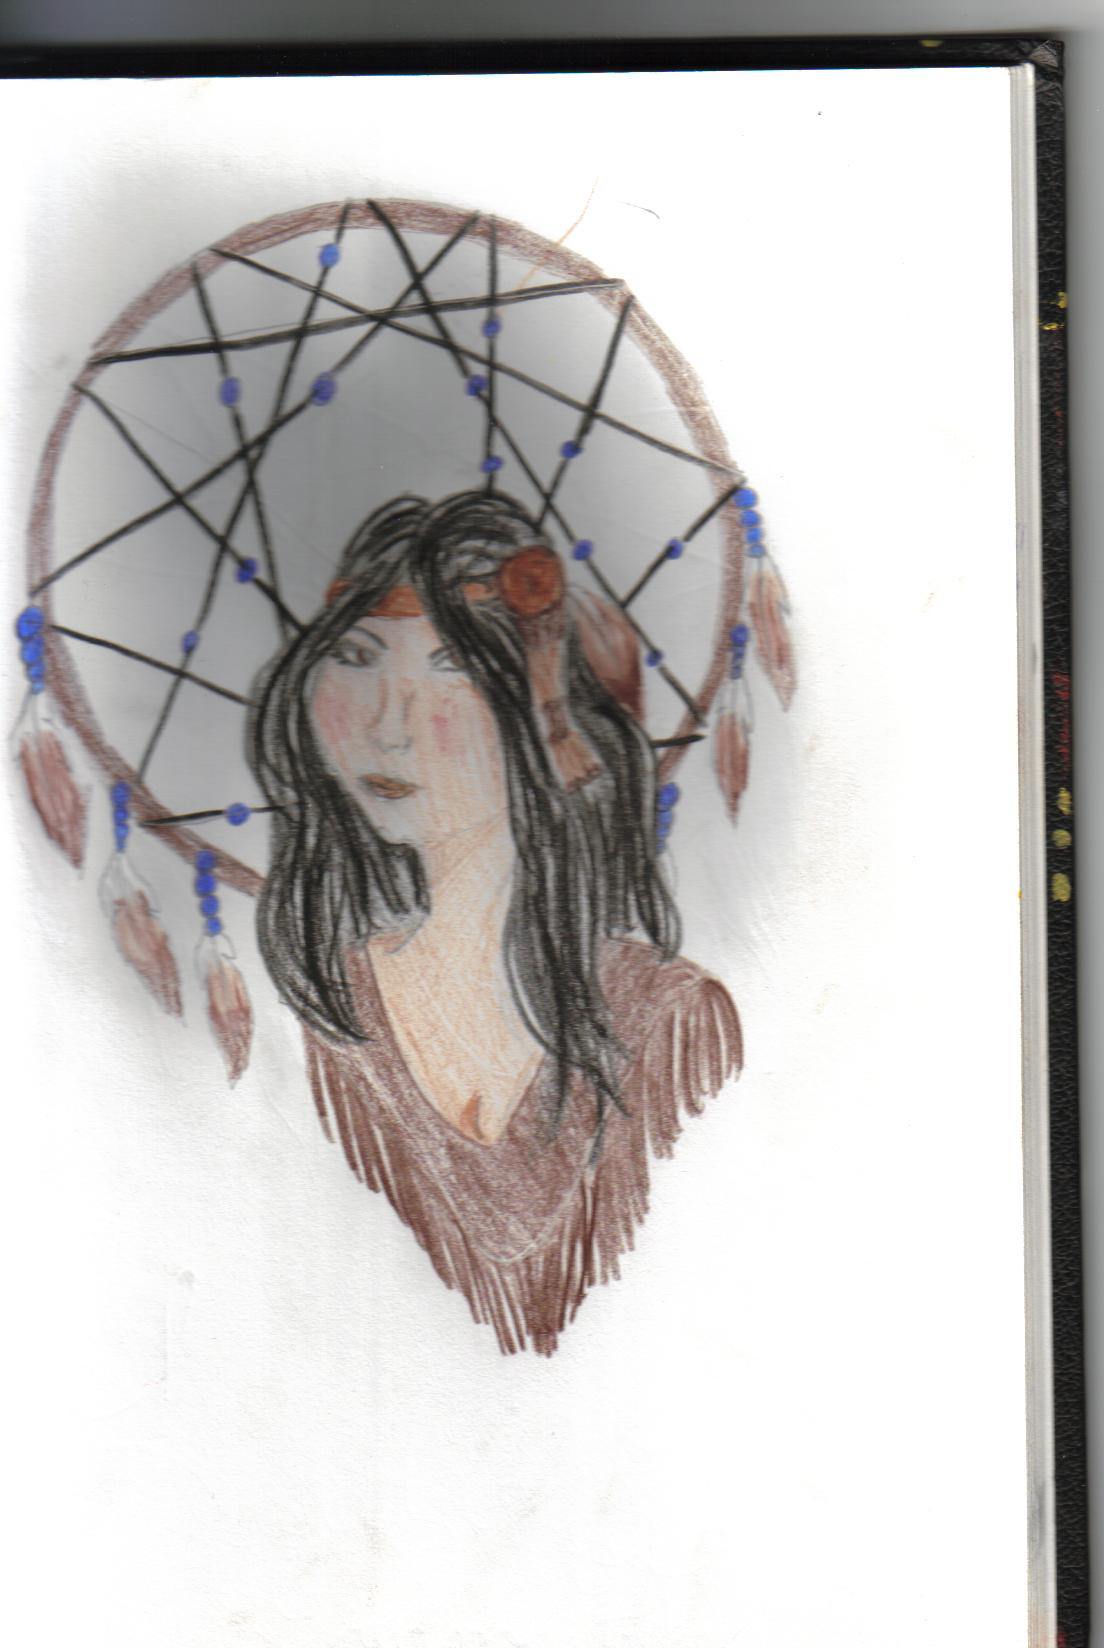 native woman by meowmixman